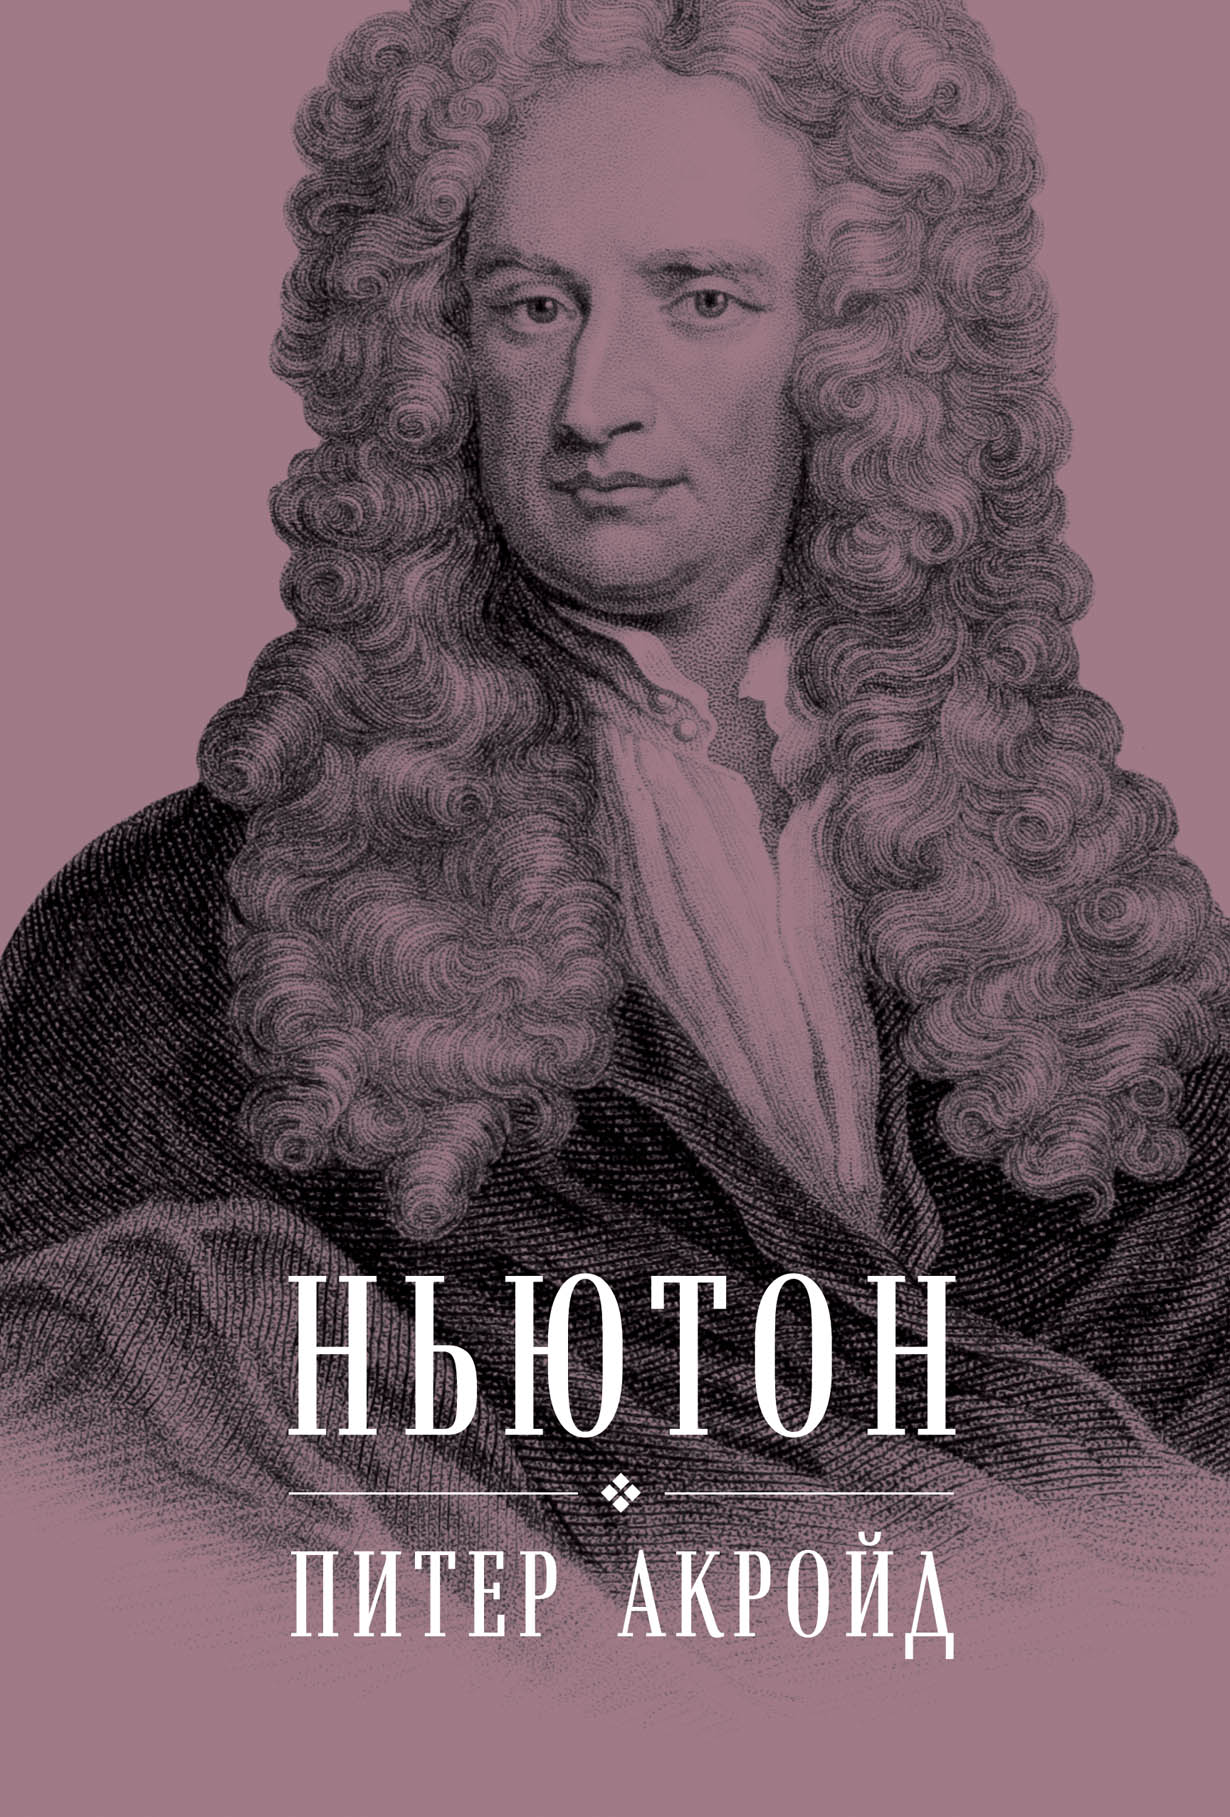 Ньютон книги купить. Питер Акройд Ньютон книга. Ньютон.биография.